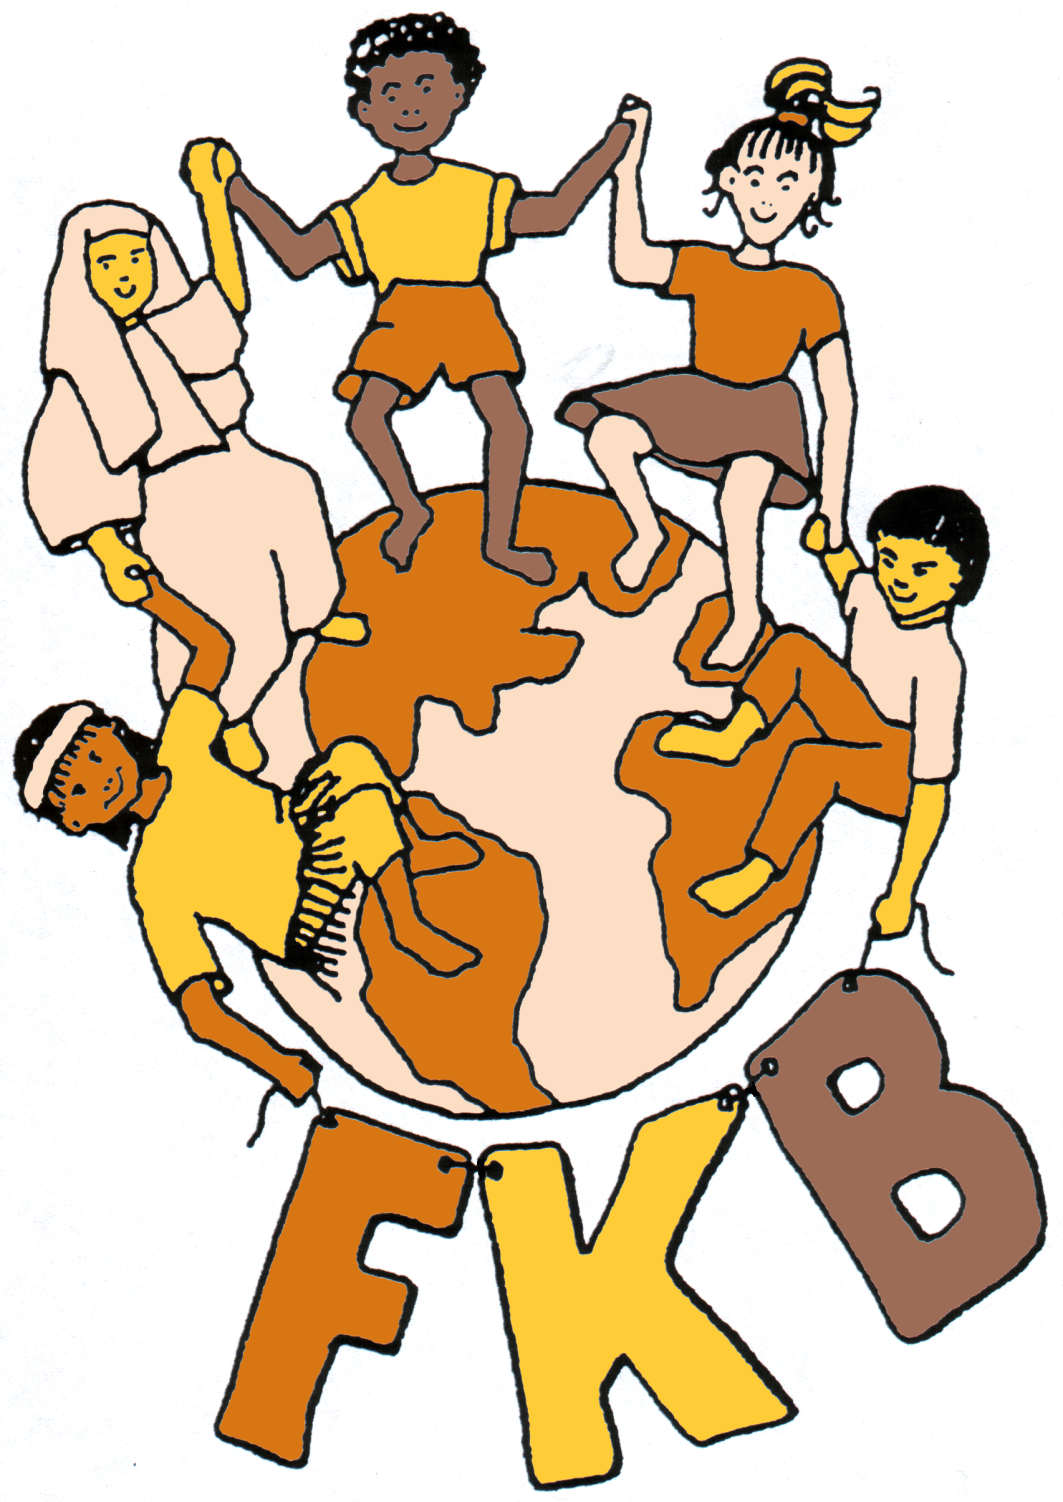 Kinder halten sich an Händen, tanzen um den Globus, darunter Schriftzug FKB